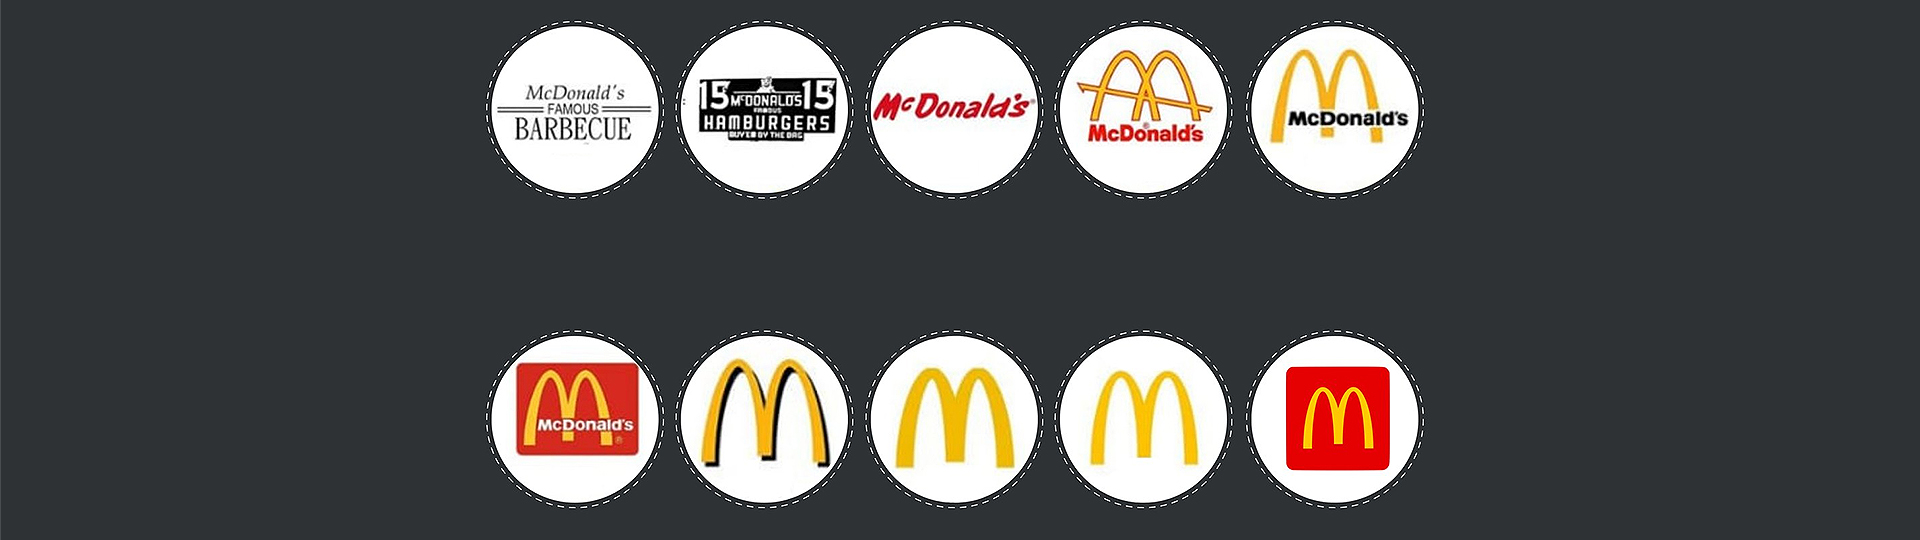 original mcdonalds logo